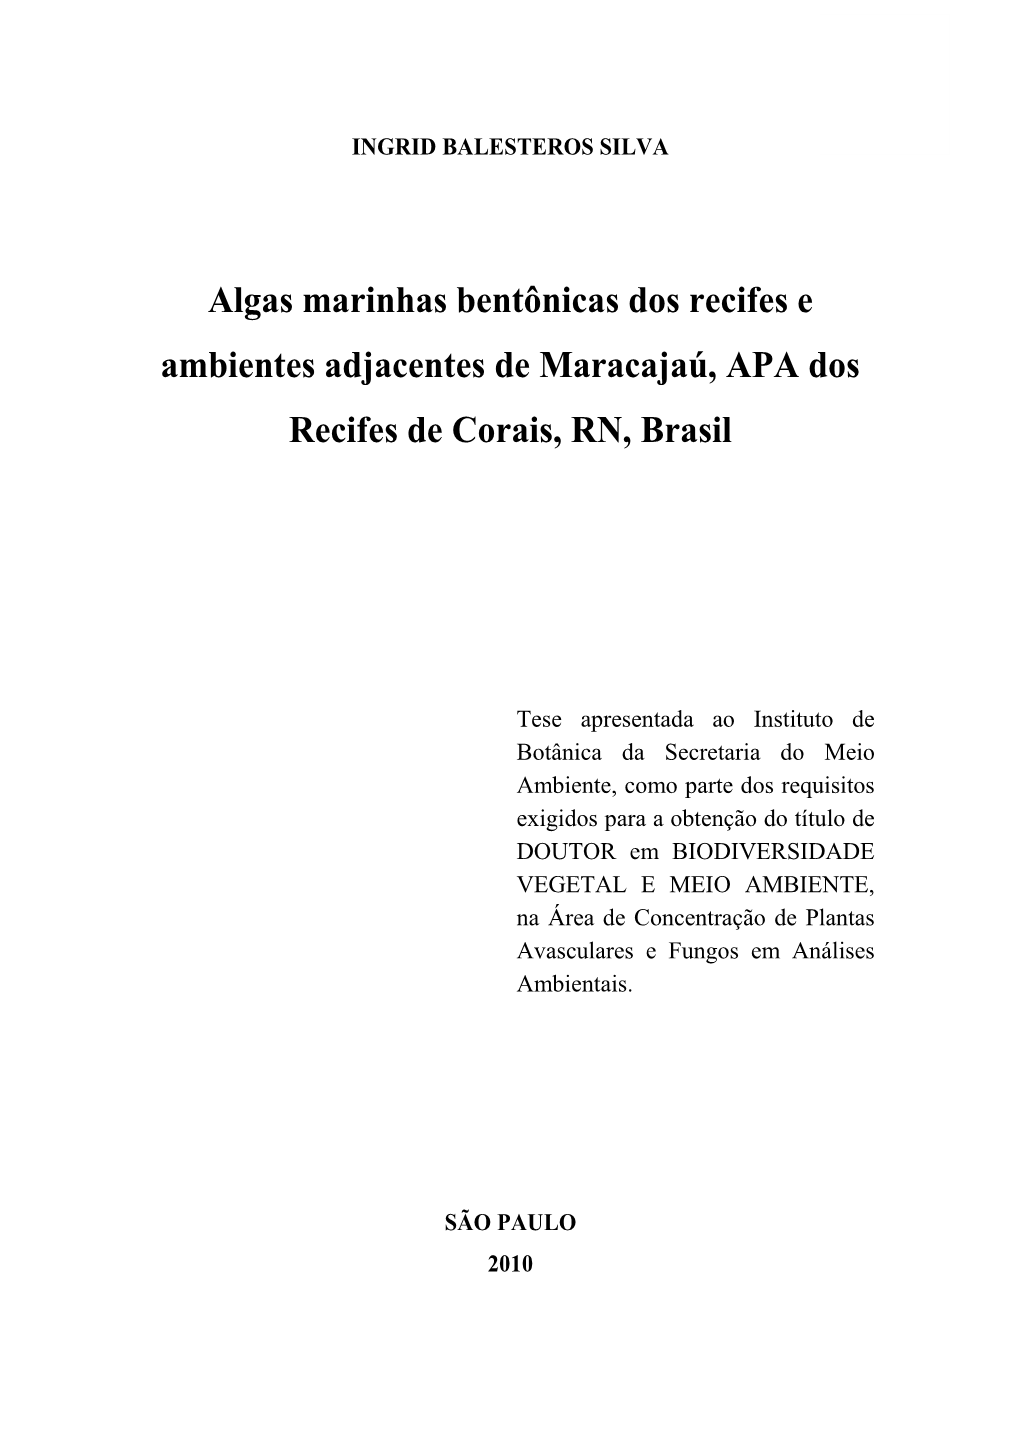 Algas Marinhas Bentônicas Dos Recifes E Ambientes Adjacentes De Maracajaú, APA Dos Recifes De Corais, RN, Brasil